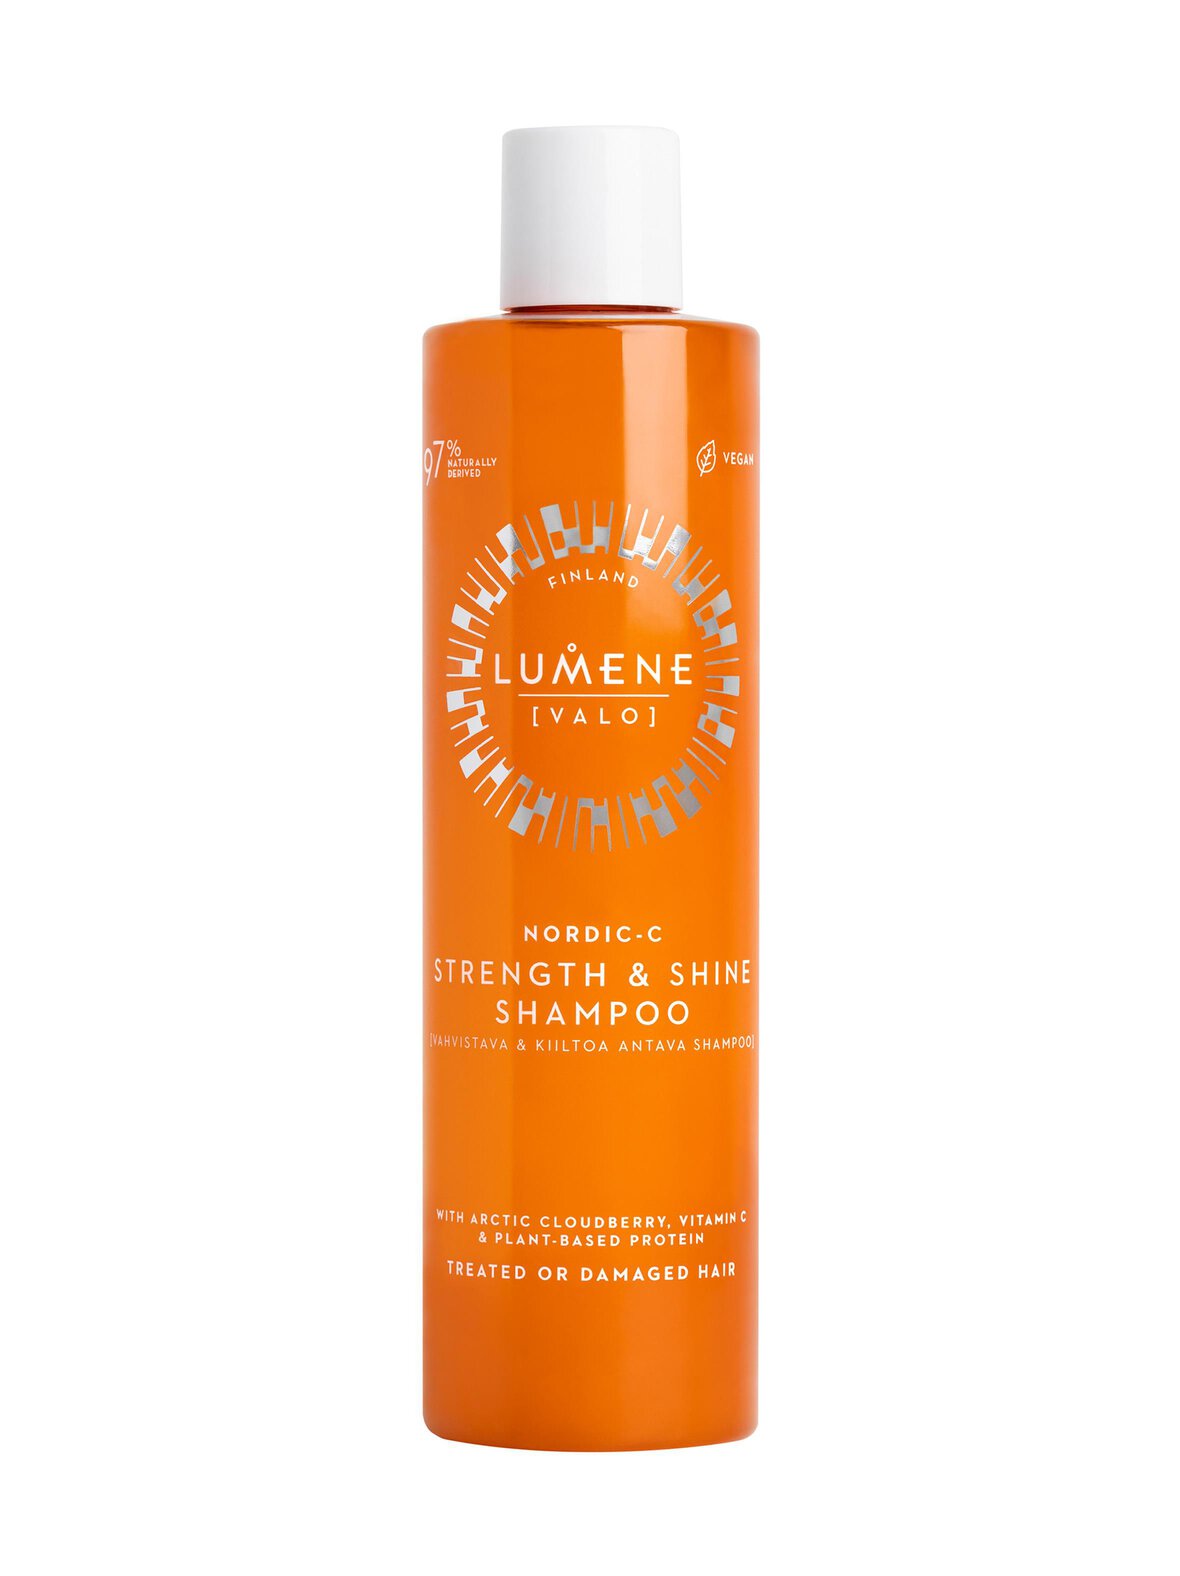 Lumene Valo strength & shine -vahvistava kiiltoa antava shampoo